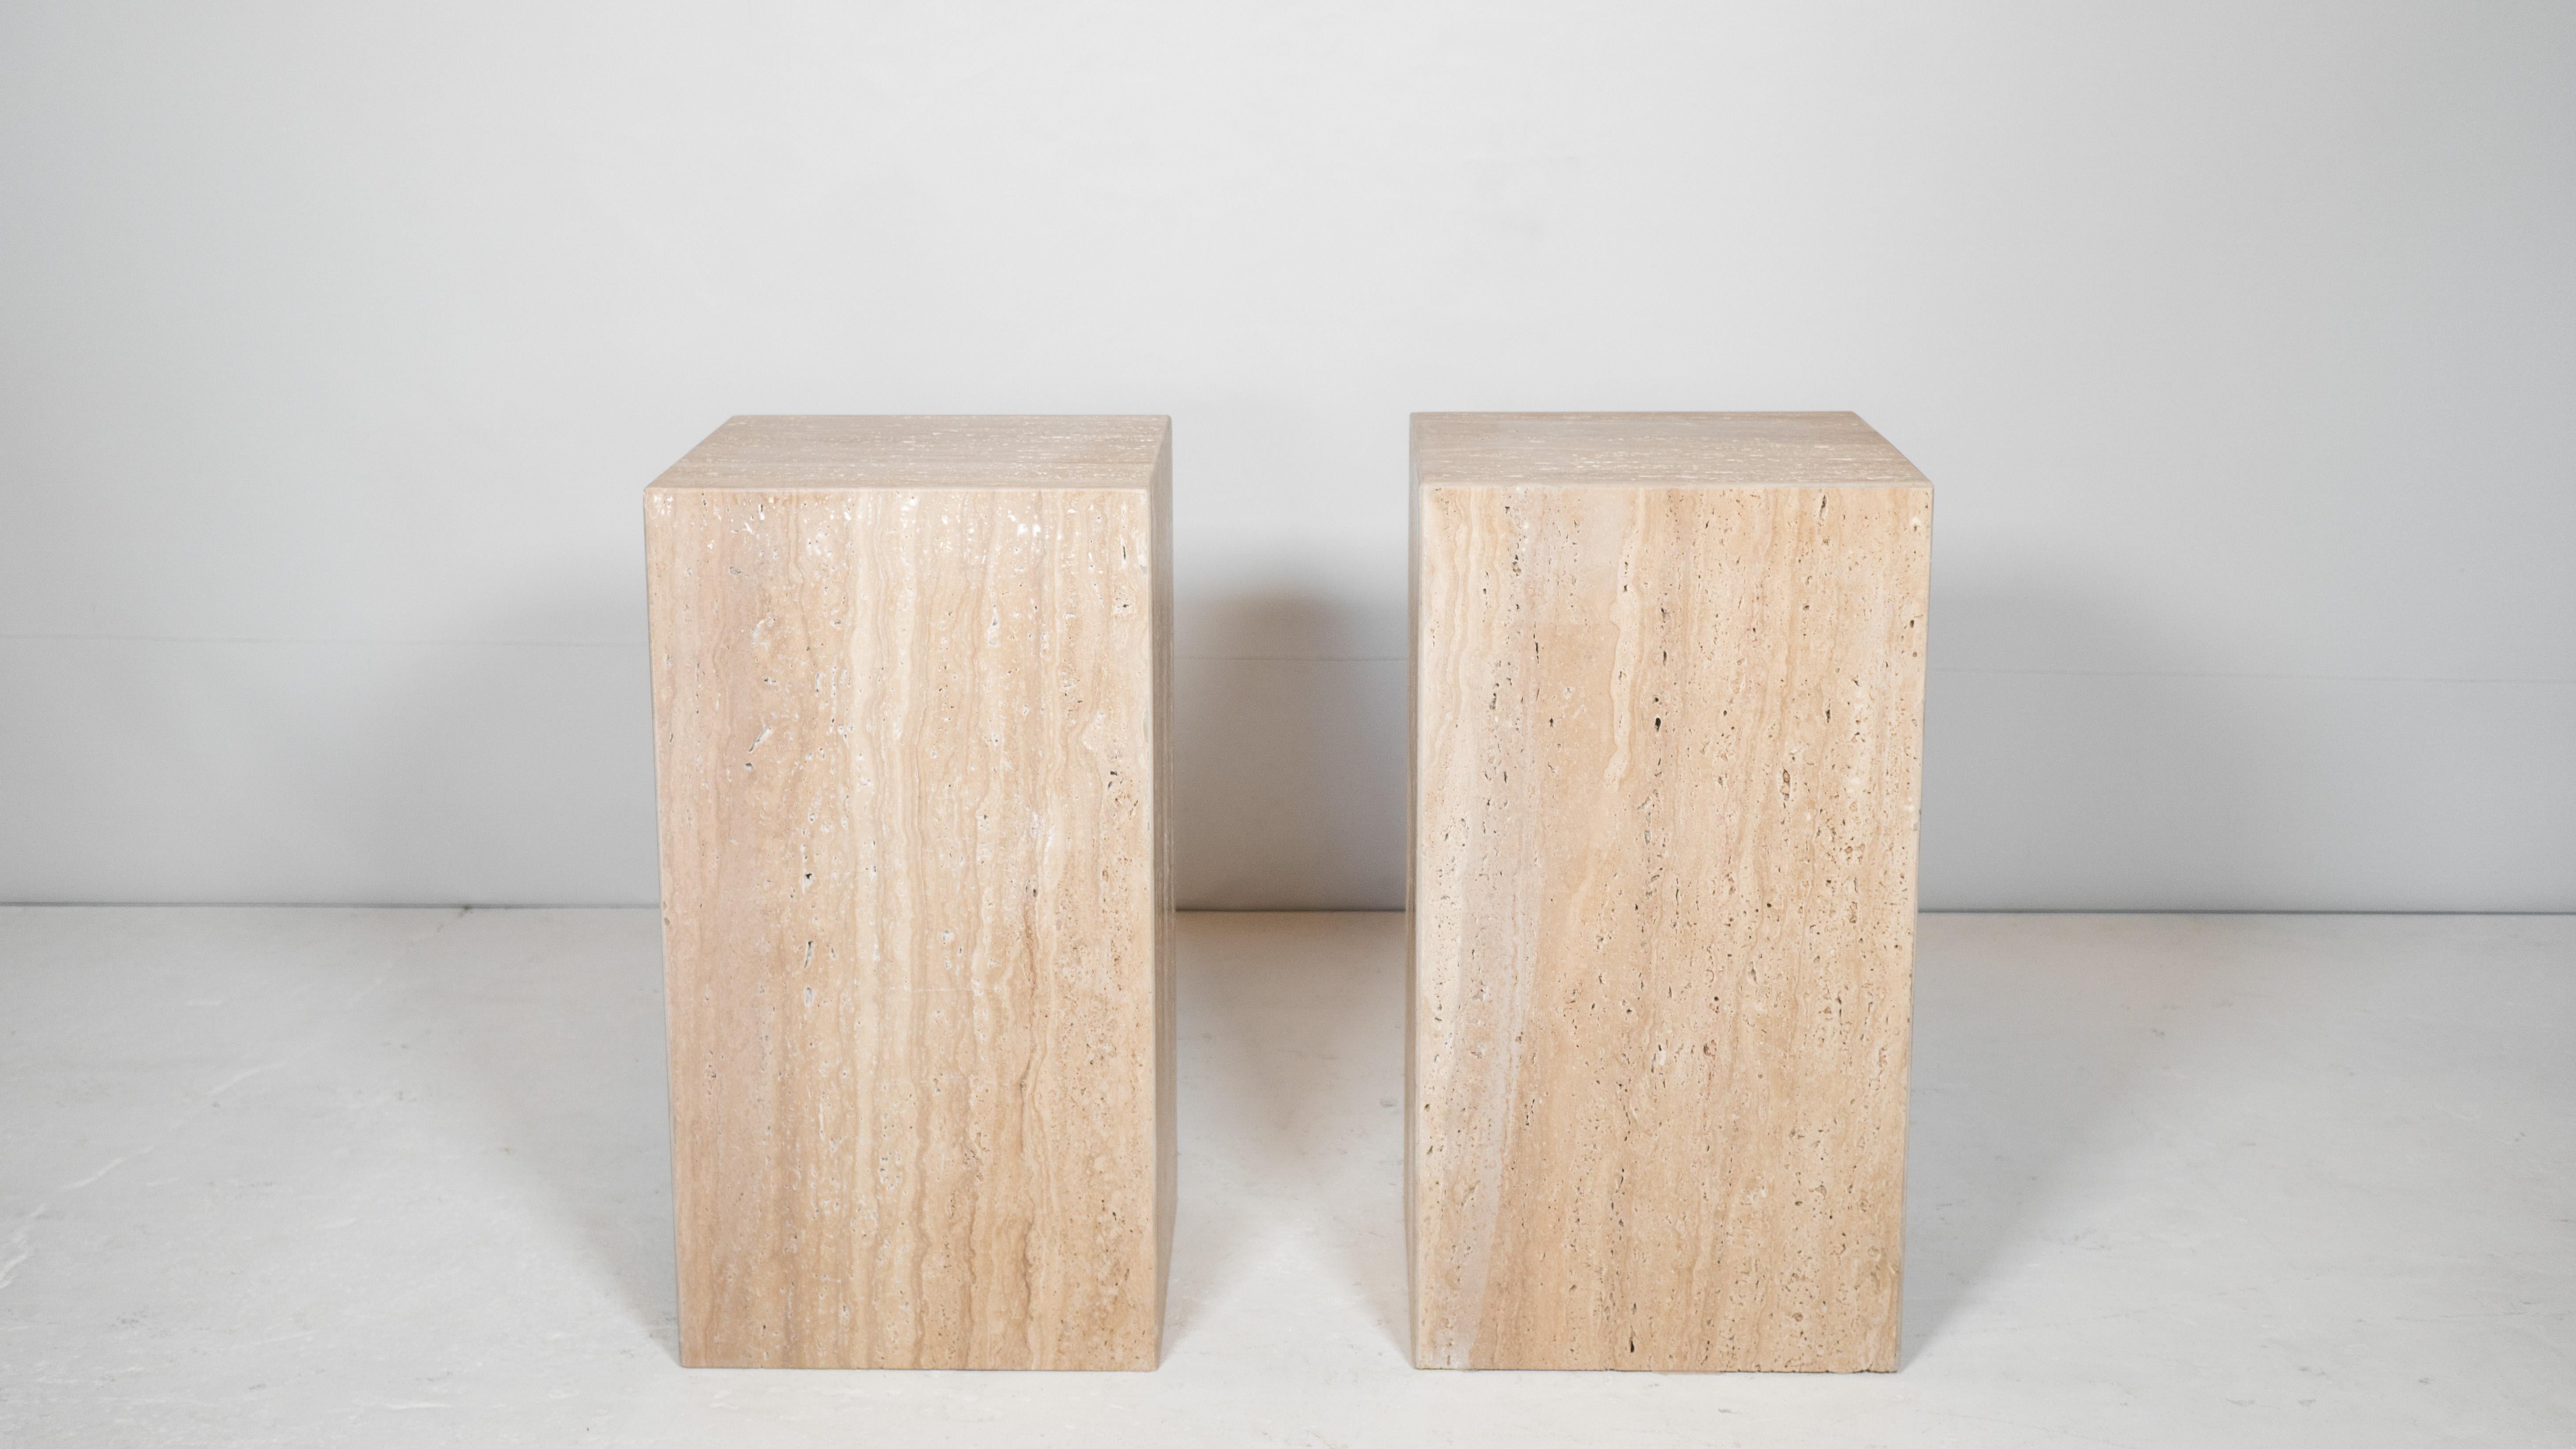 Impressionnante paire de grandes tables d'appoint en travertin italien, vers les années 1980. La pierre brute poreuse présente un grain magnifique et des tons neutres et vibrants. Presence offre de l'élégance tout en conservant un design